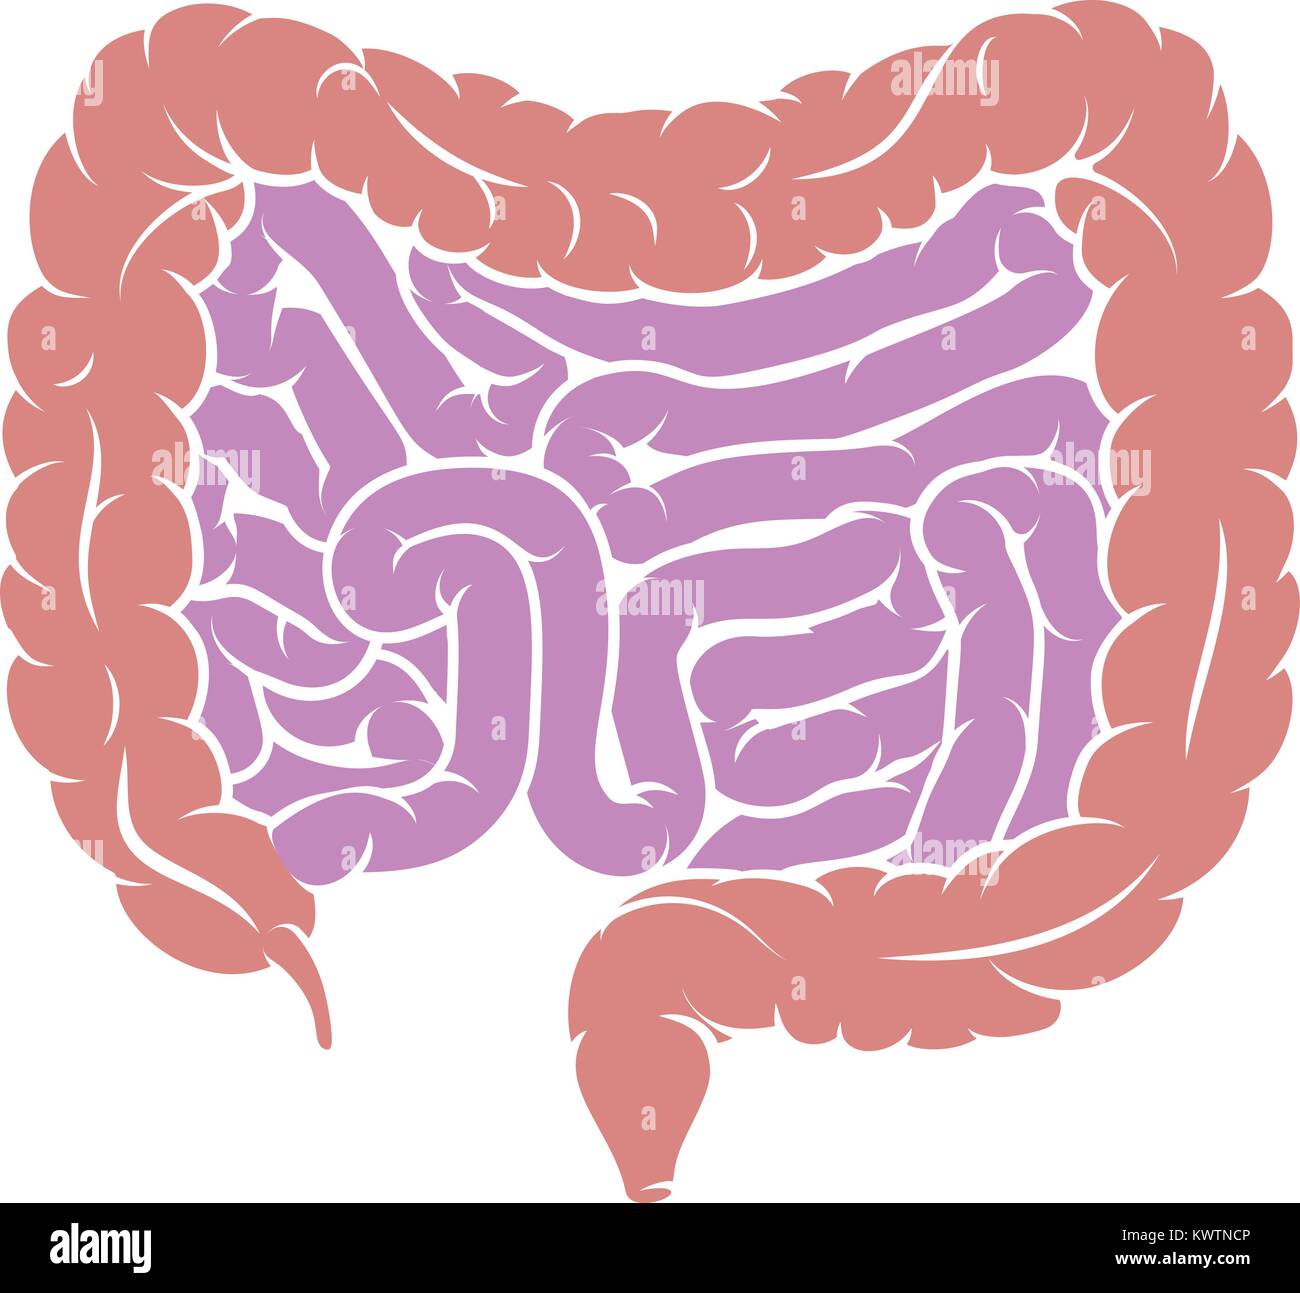 Schema di intestino Gut sistema digestivo Illustrazione Vettoriale